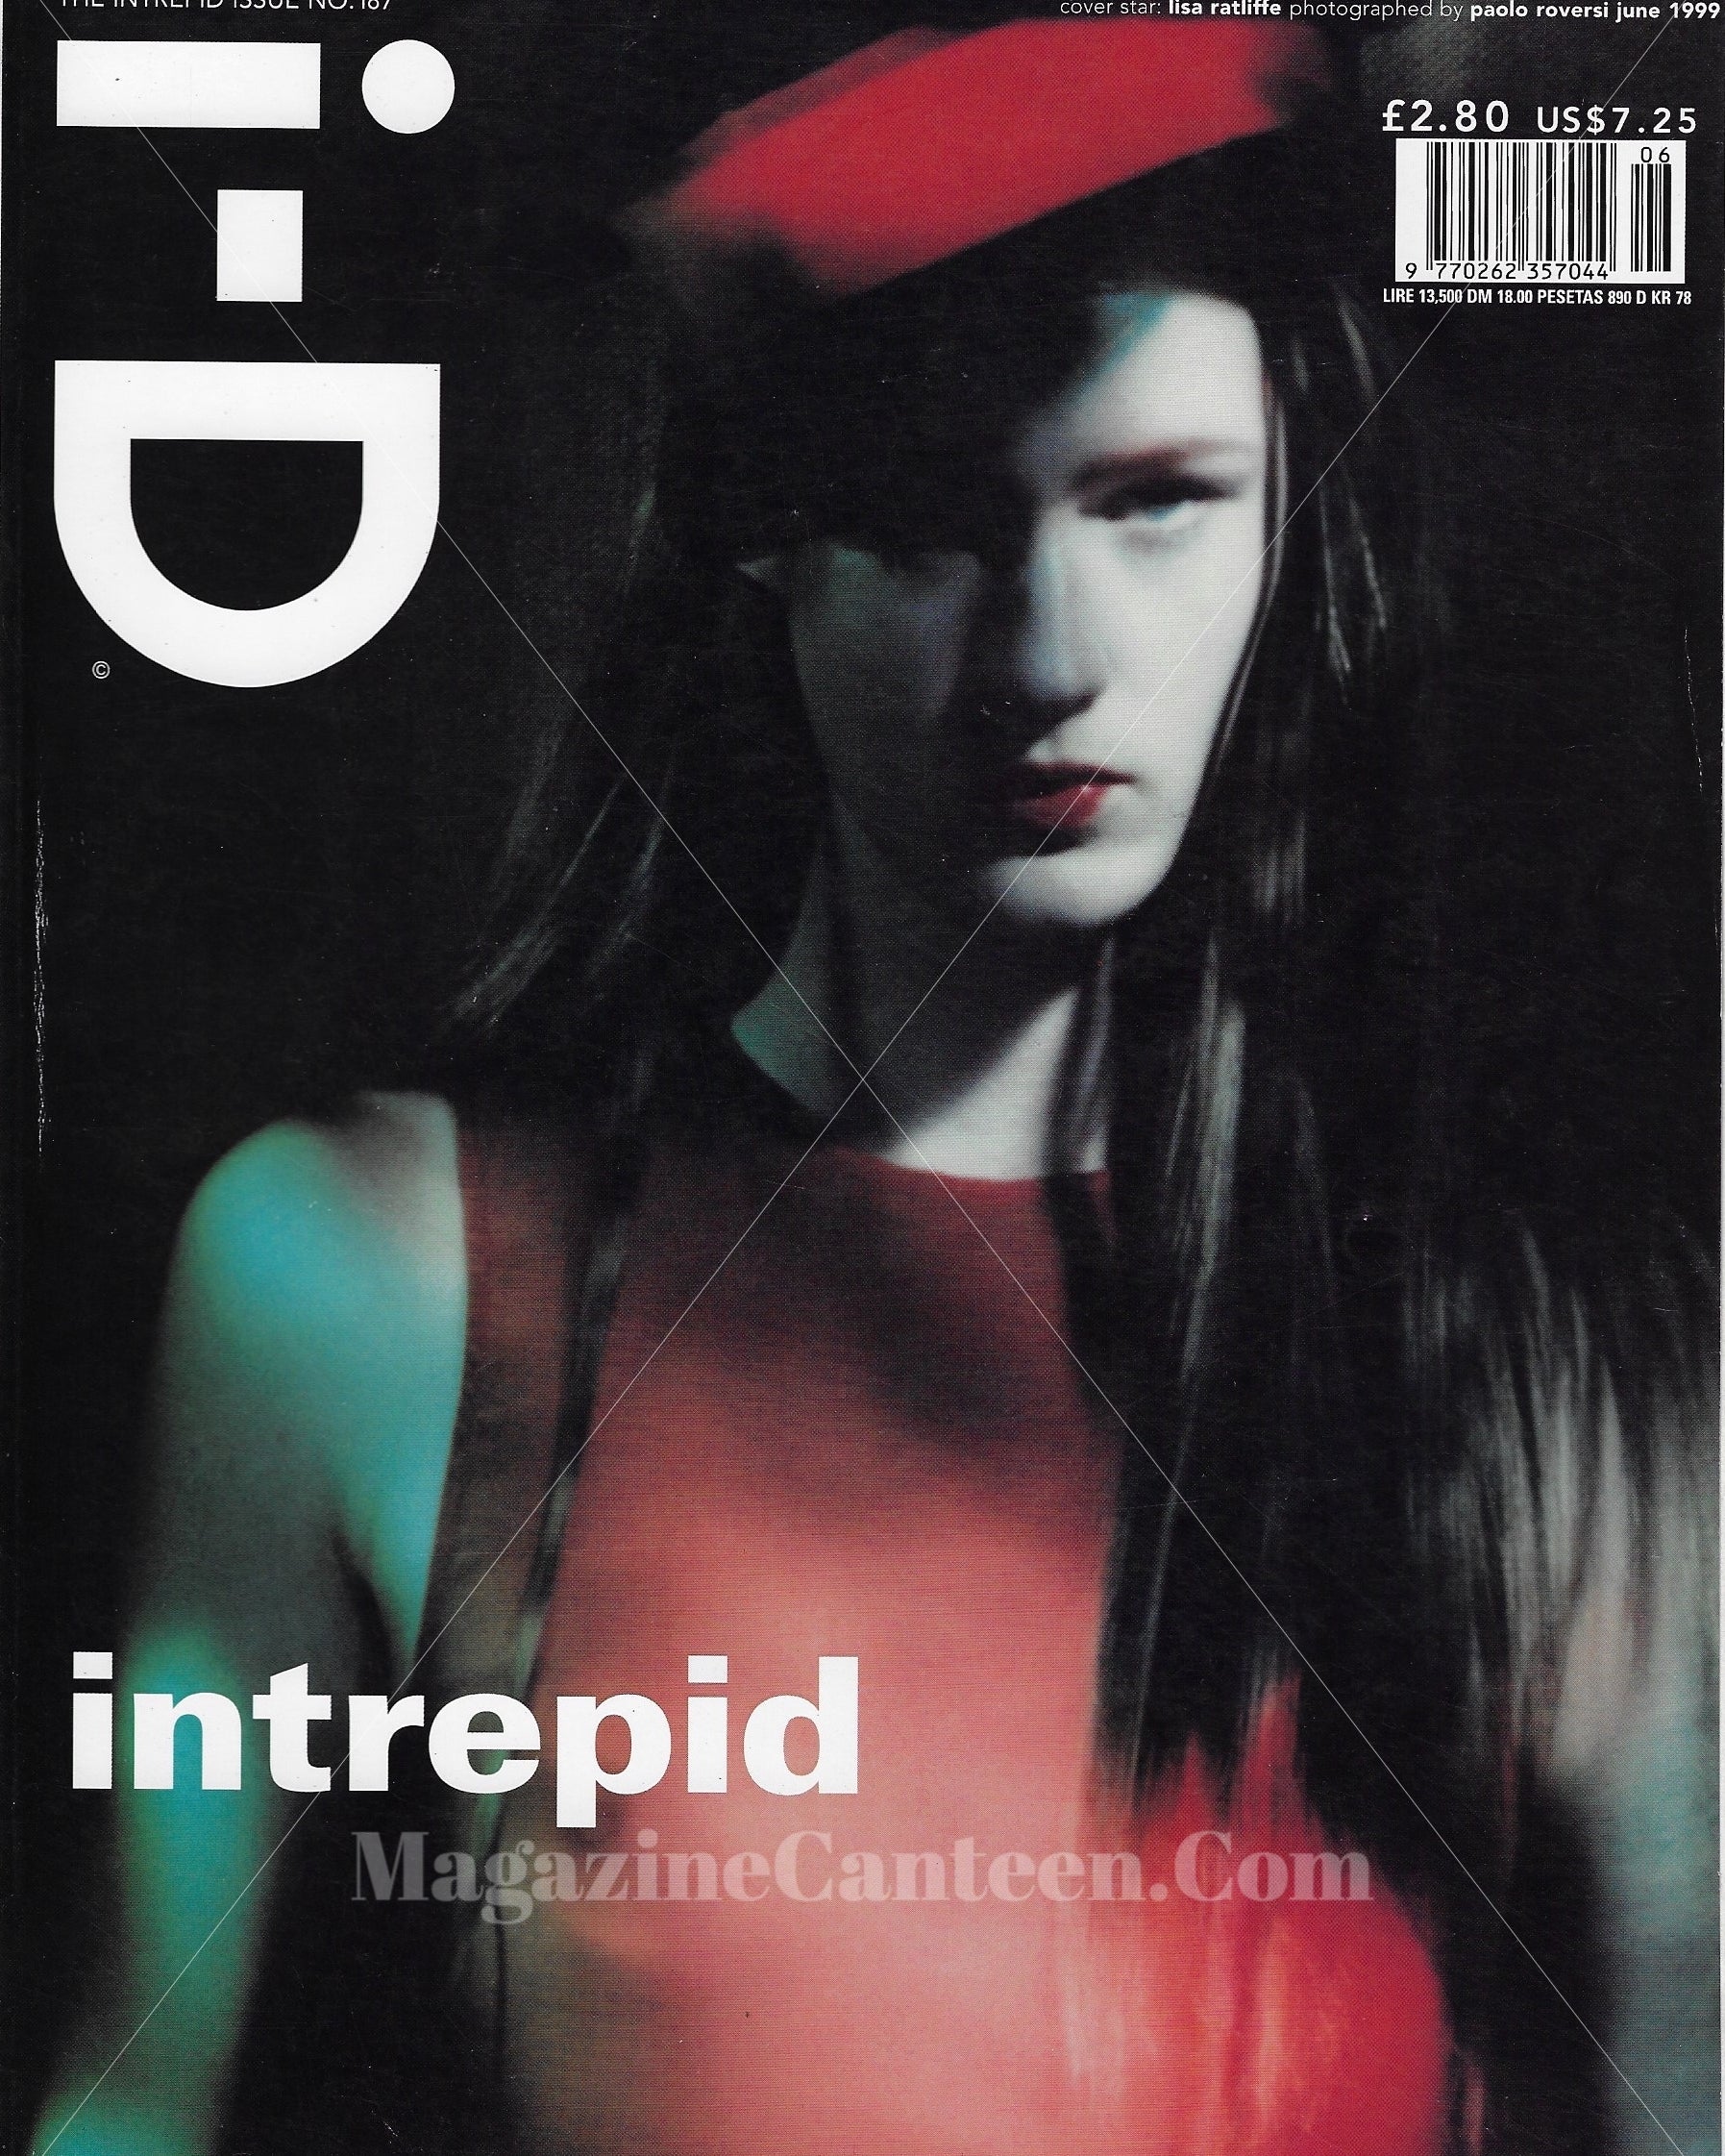 I-D Magazine 187 - Lisa Ratcliffe 1999